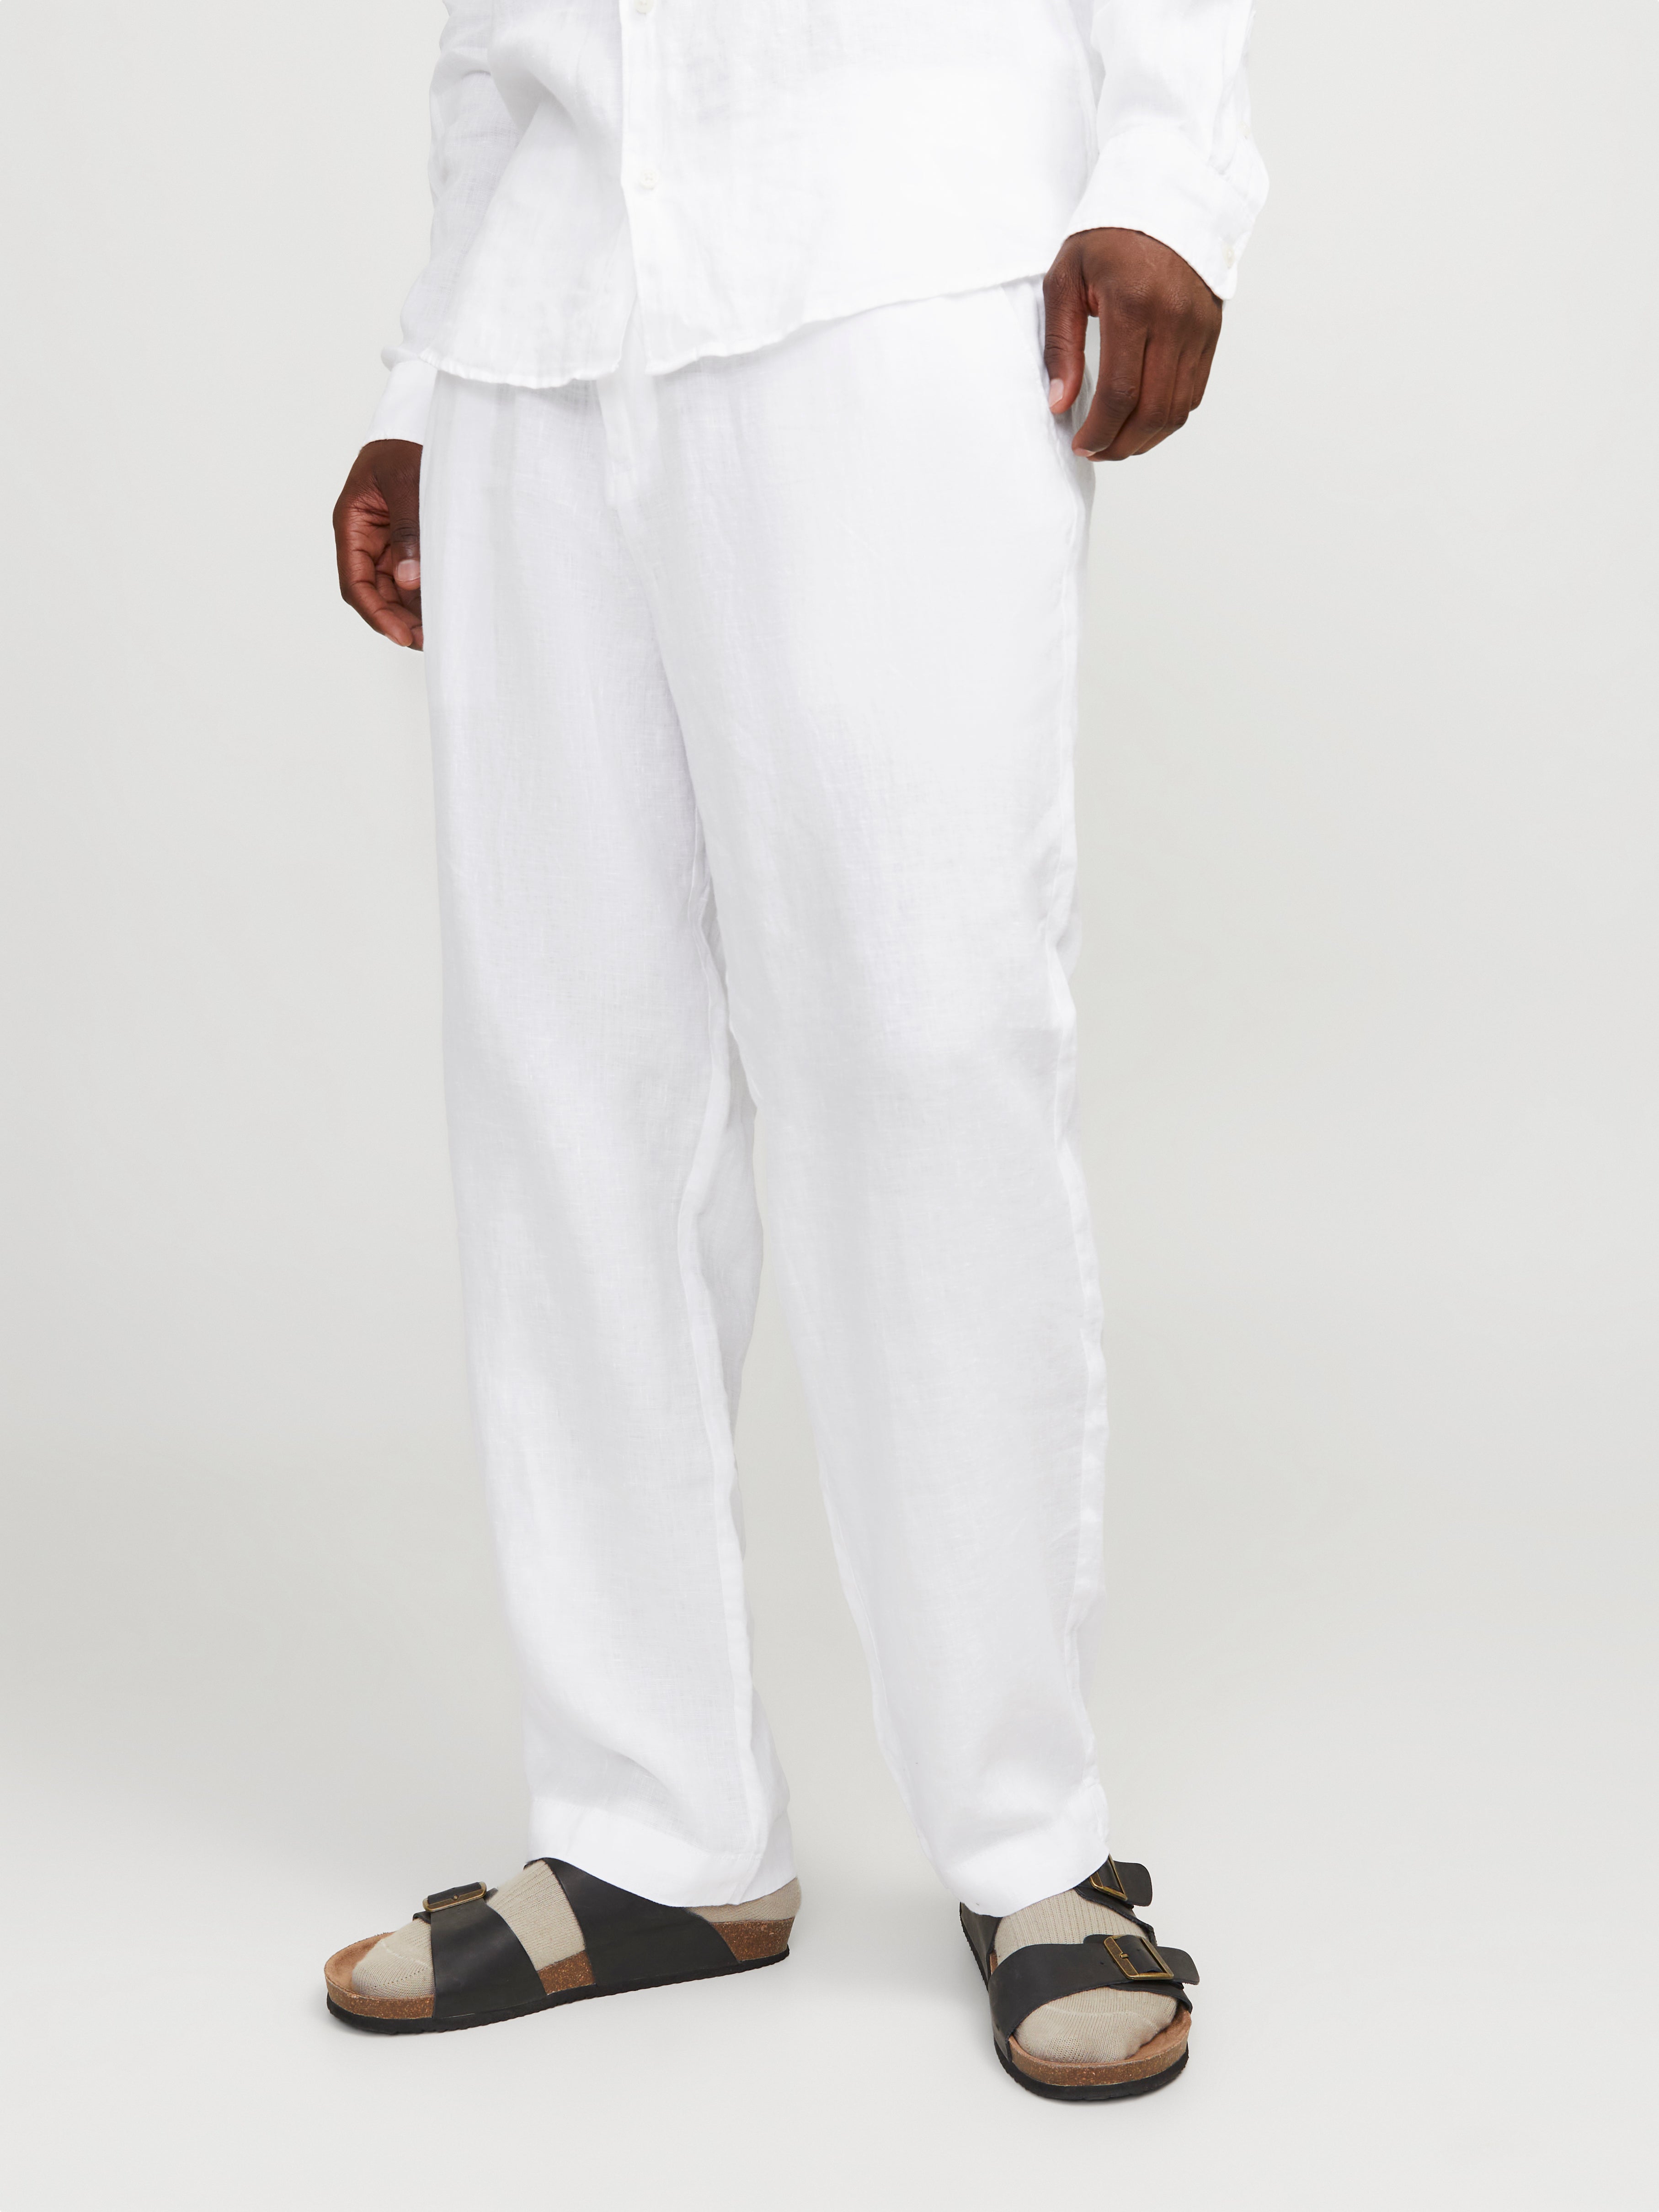 Men Vintage Cotton Linen Long Pants Loose Casual Elastic Waist Linen  Trousers | Wish